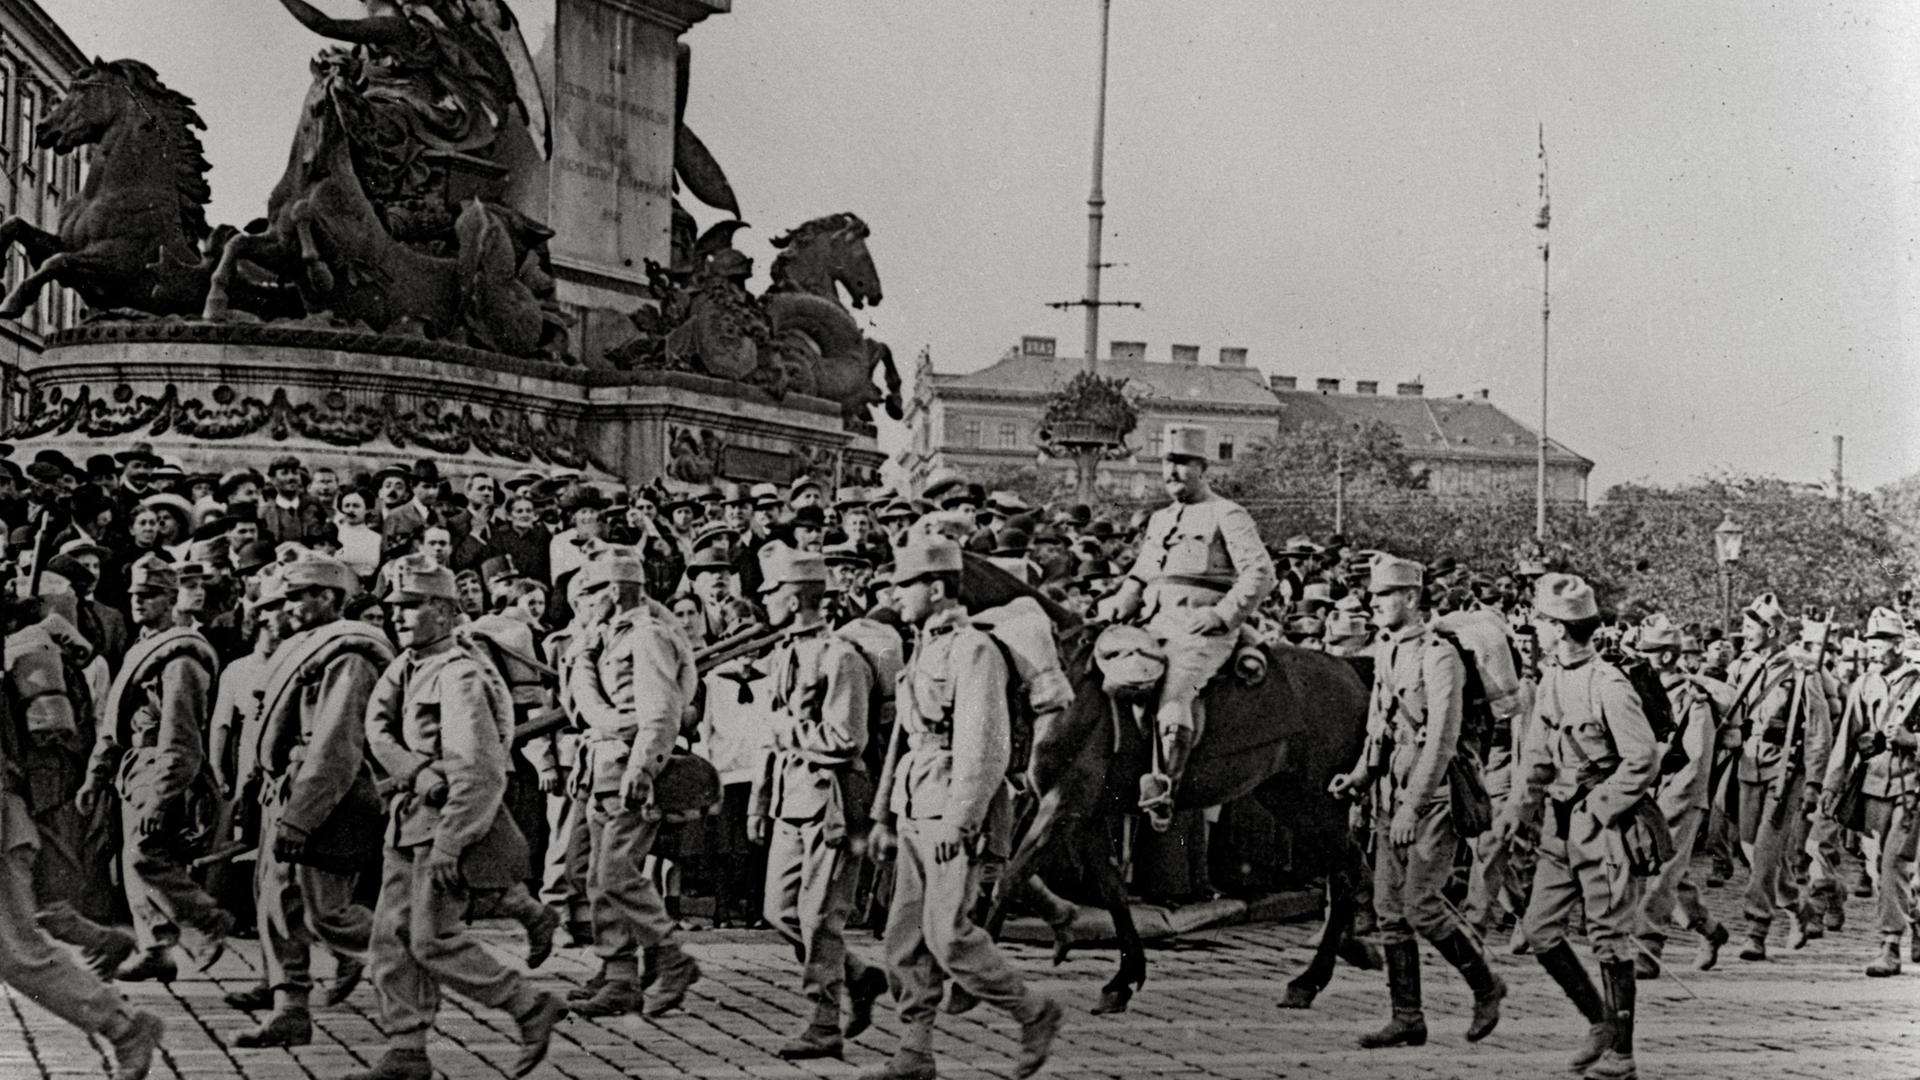 Historische Fotografie vom Abmarsch eines Infanterieregiments auf dem Wiener Praterstern im Jahr 1914.